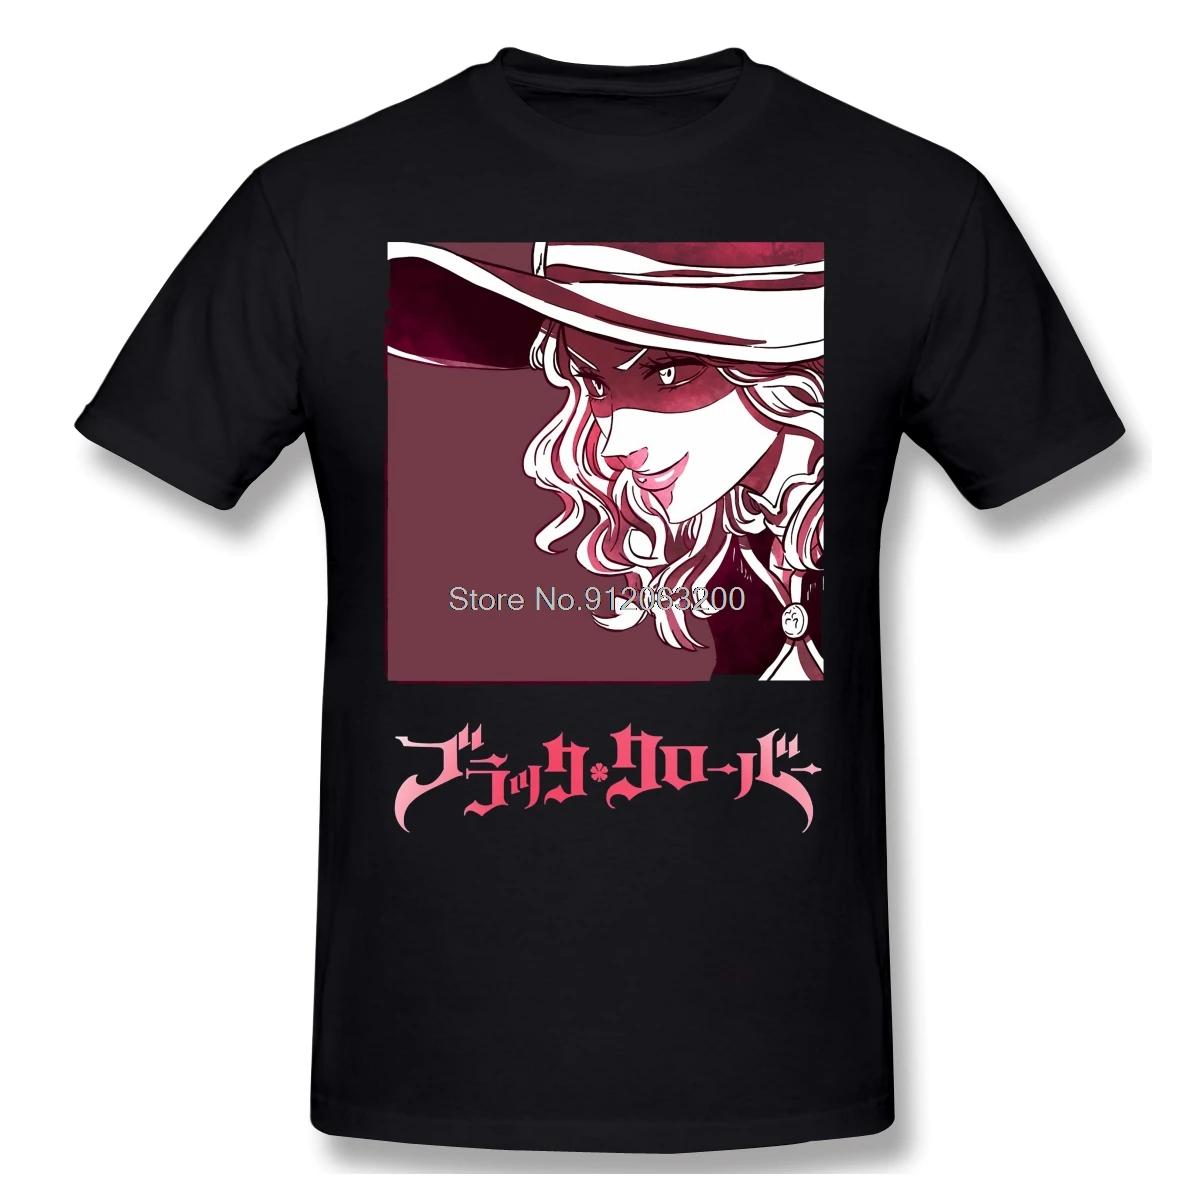 

Мужская черная футболка с изображением клевера (Vanessa Enoteca), хлопковые футболки, футболка в стиле Харадзюку, уличная одежда